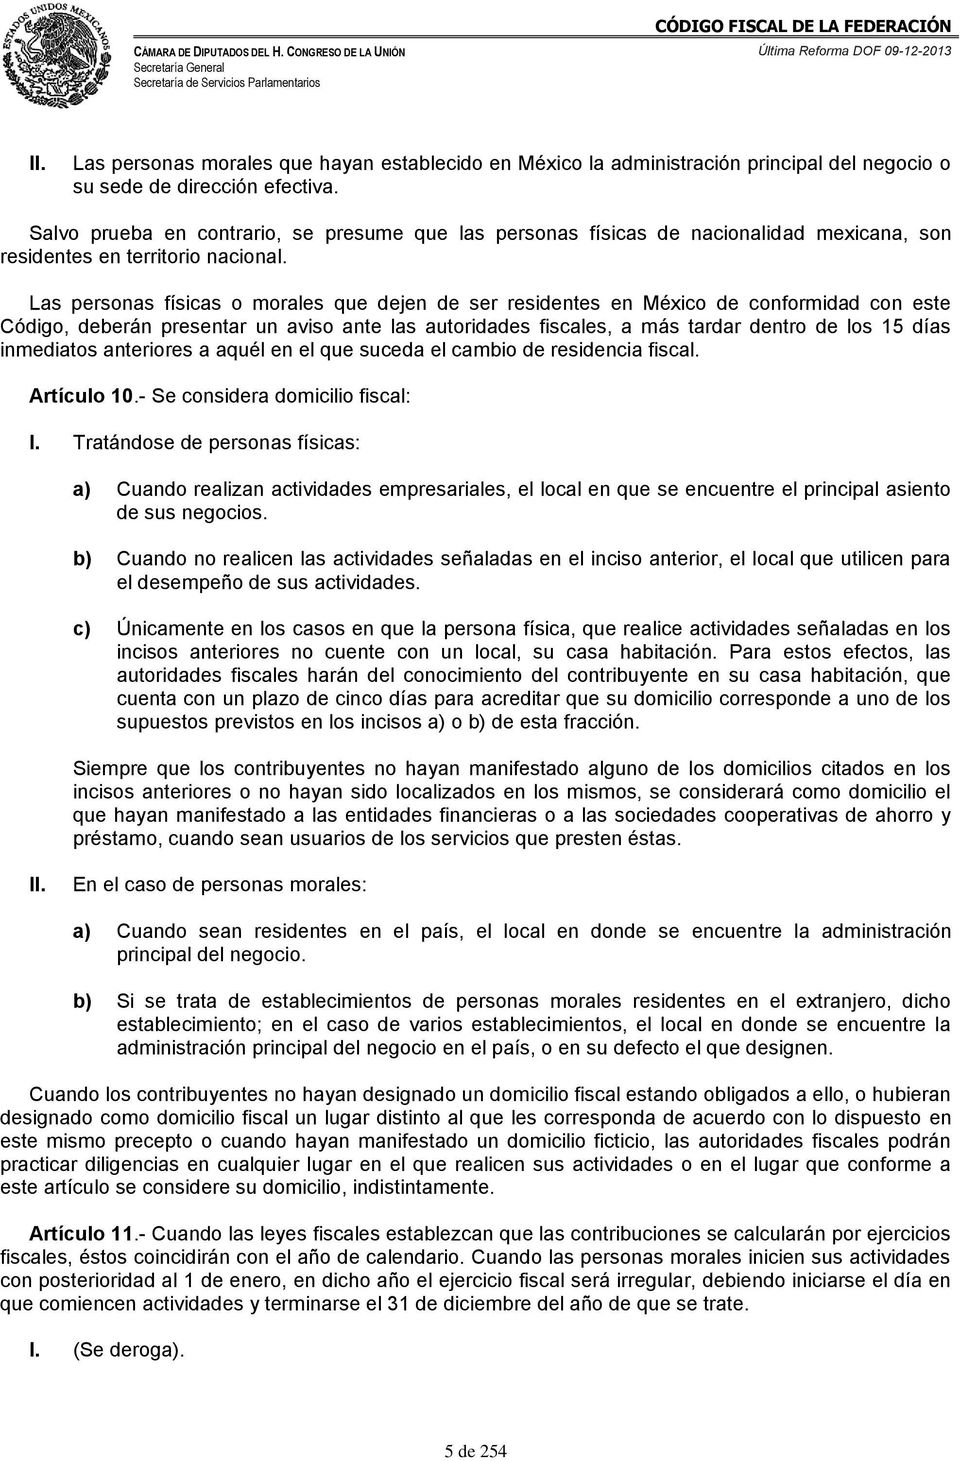 Las personas físicas o morales que dejen de ser residentes en México de conformidad con este Código, deberán presentar un aviso ante las autoridades fiscales, a más tardar dentro de los 15 días